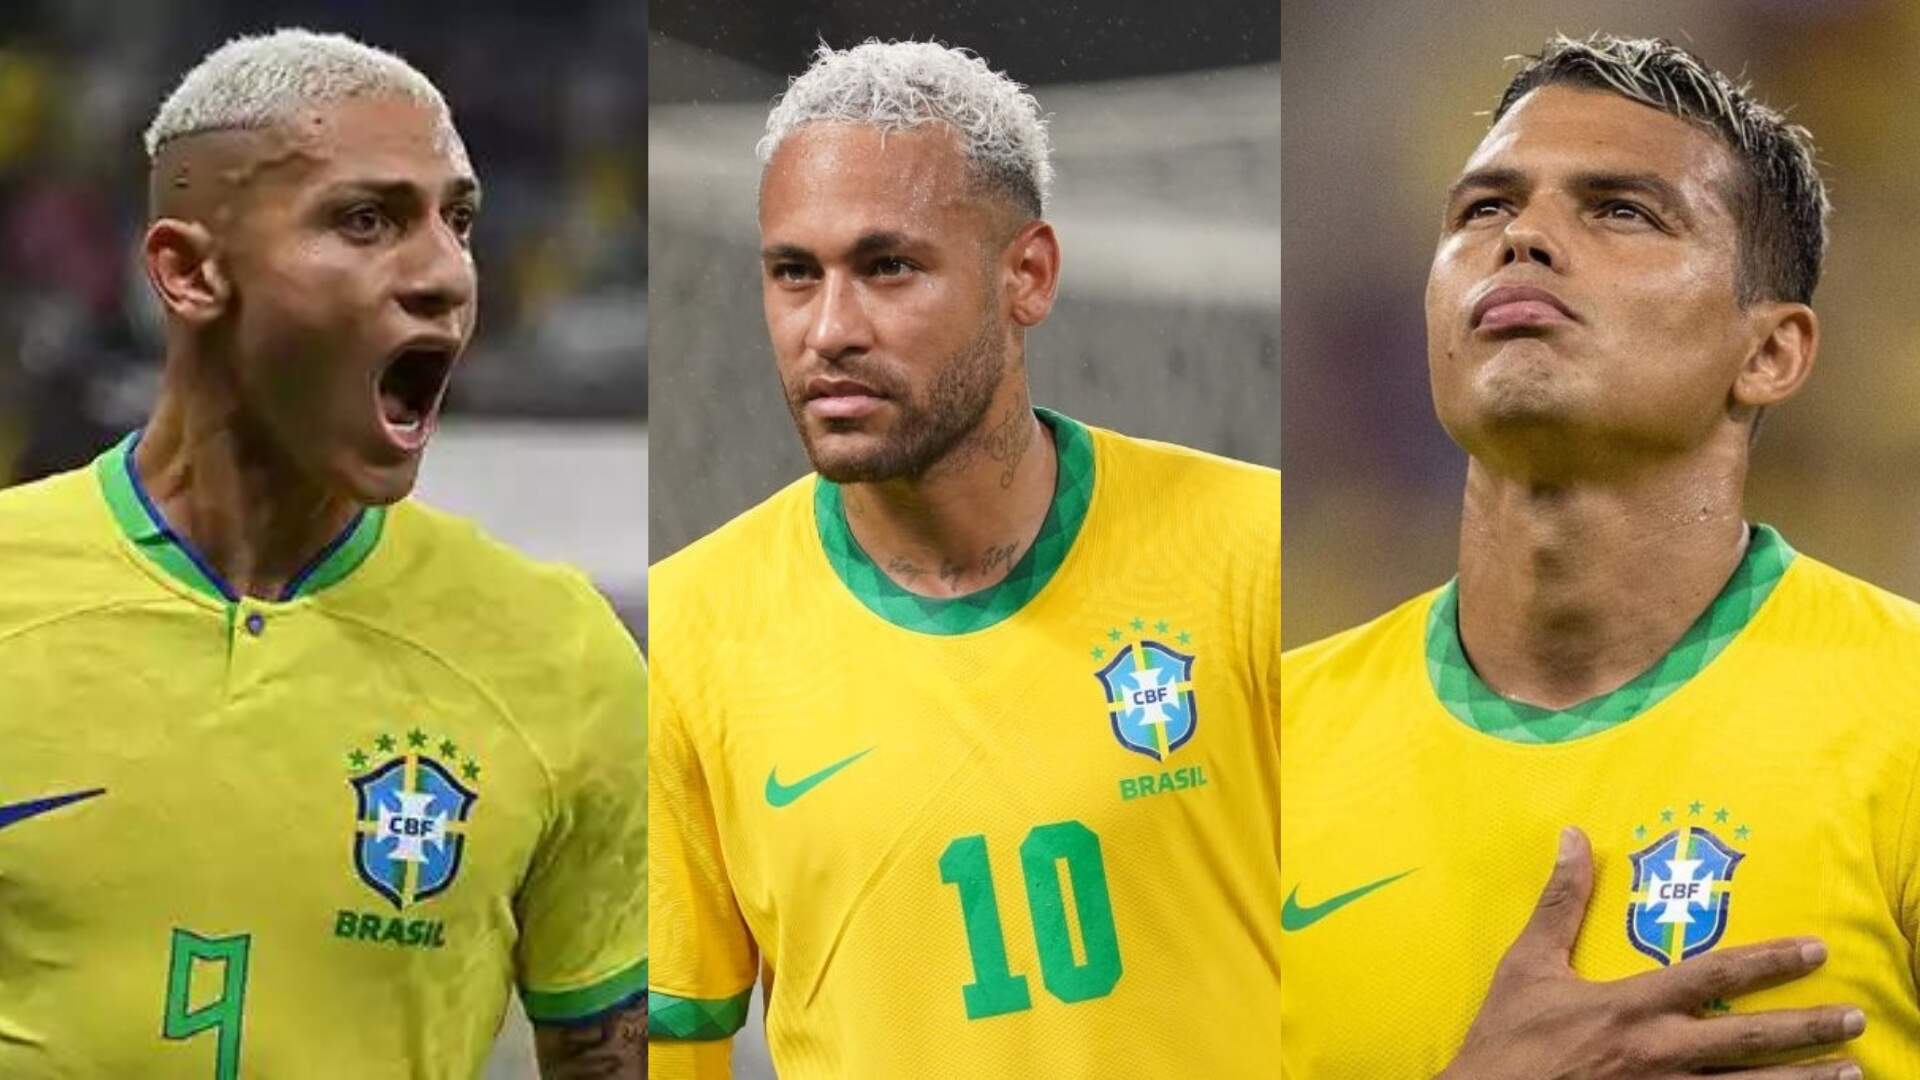 Será? Vidente que acertou os resultados de 3 Copas do Mundo revela se Brasil será o campeão - Metropolitana FM